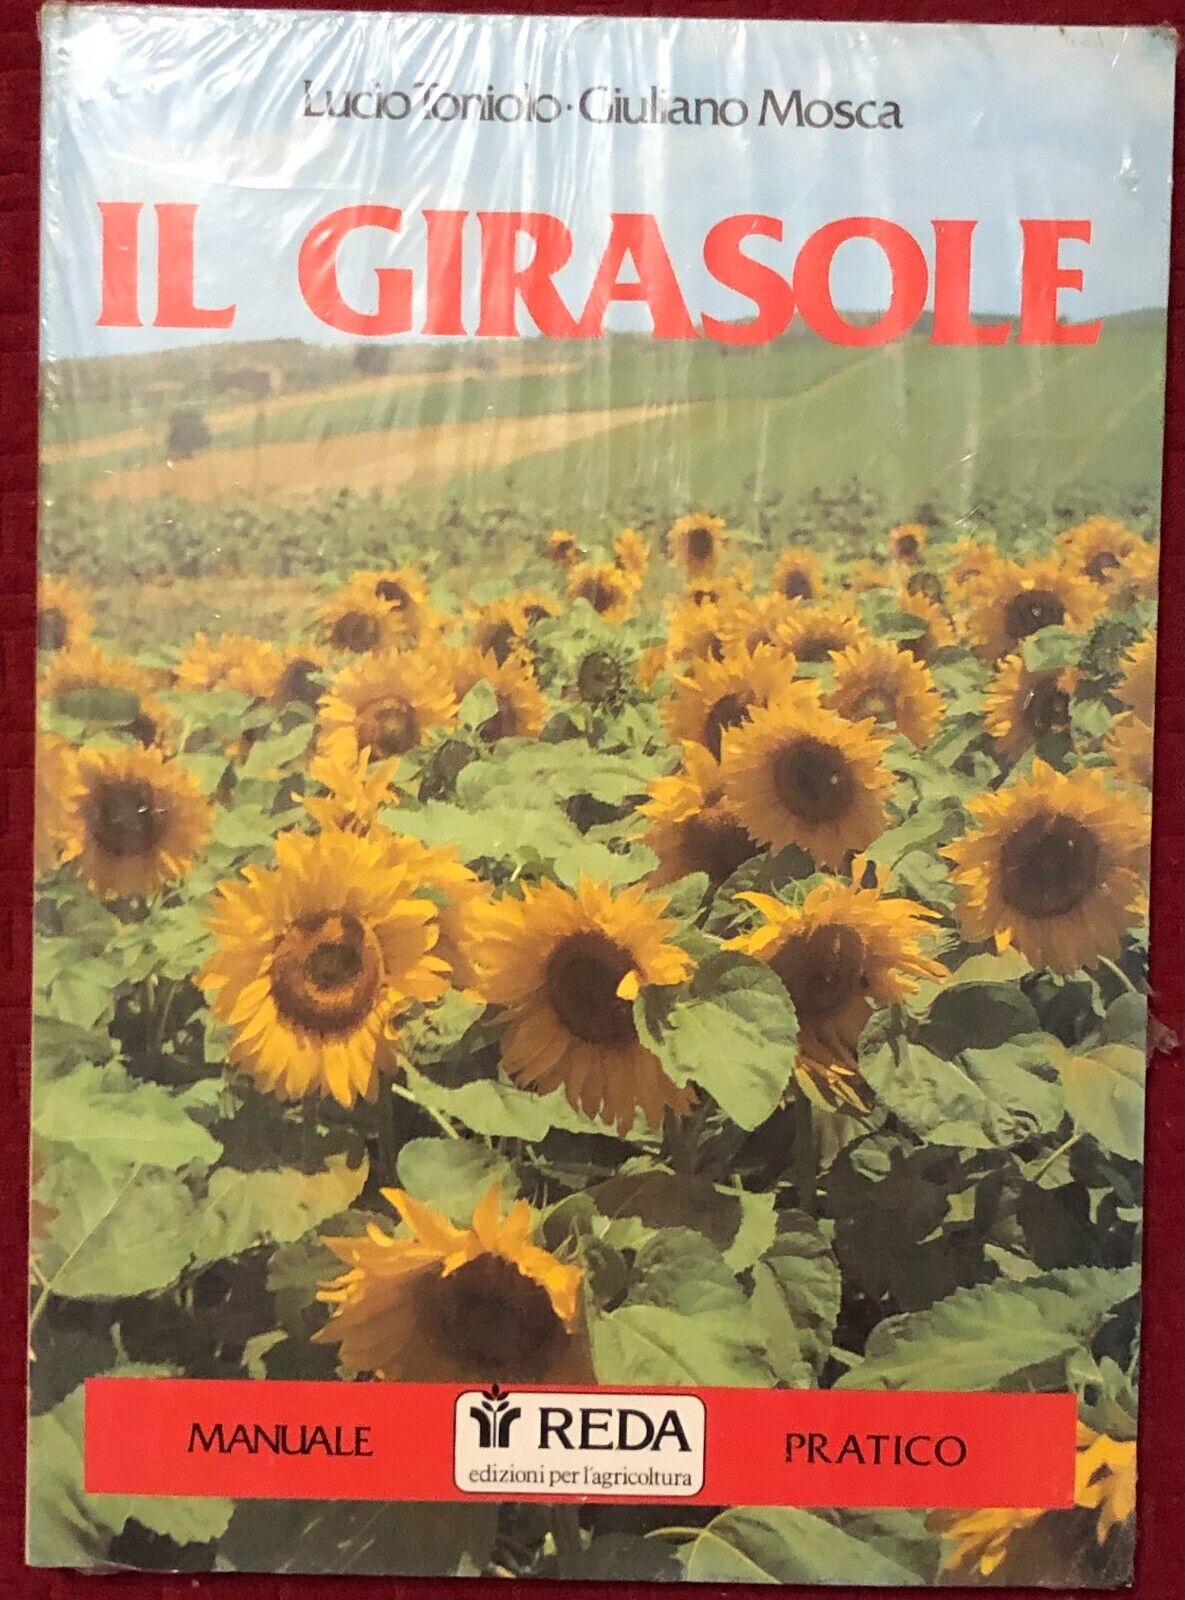 Il Girasole. Manuale pratico di Lucio Toniolo, Giuliano Mosca,  1989,  Reda Ediz